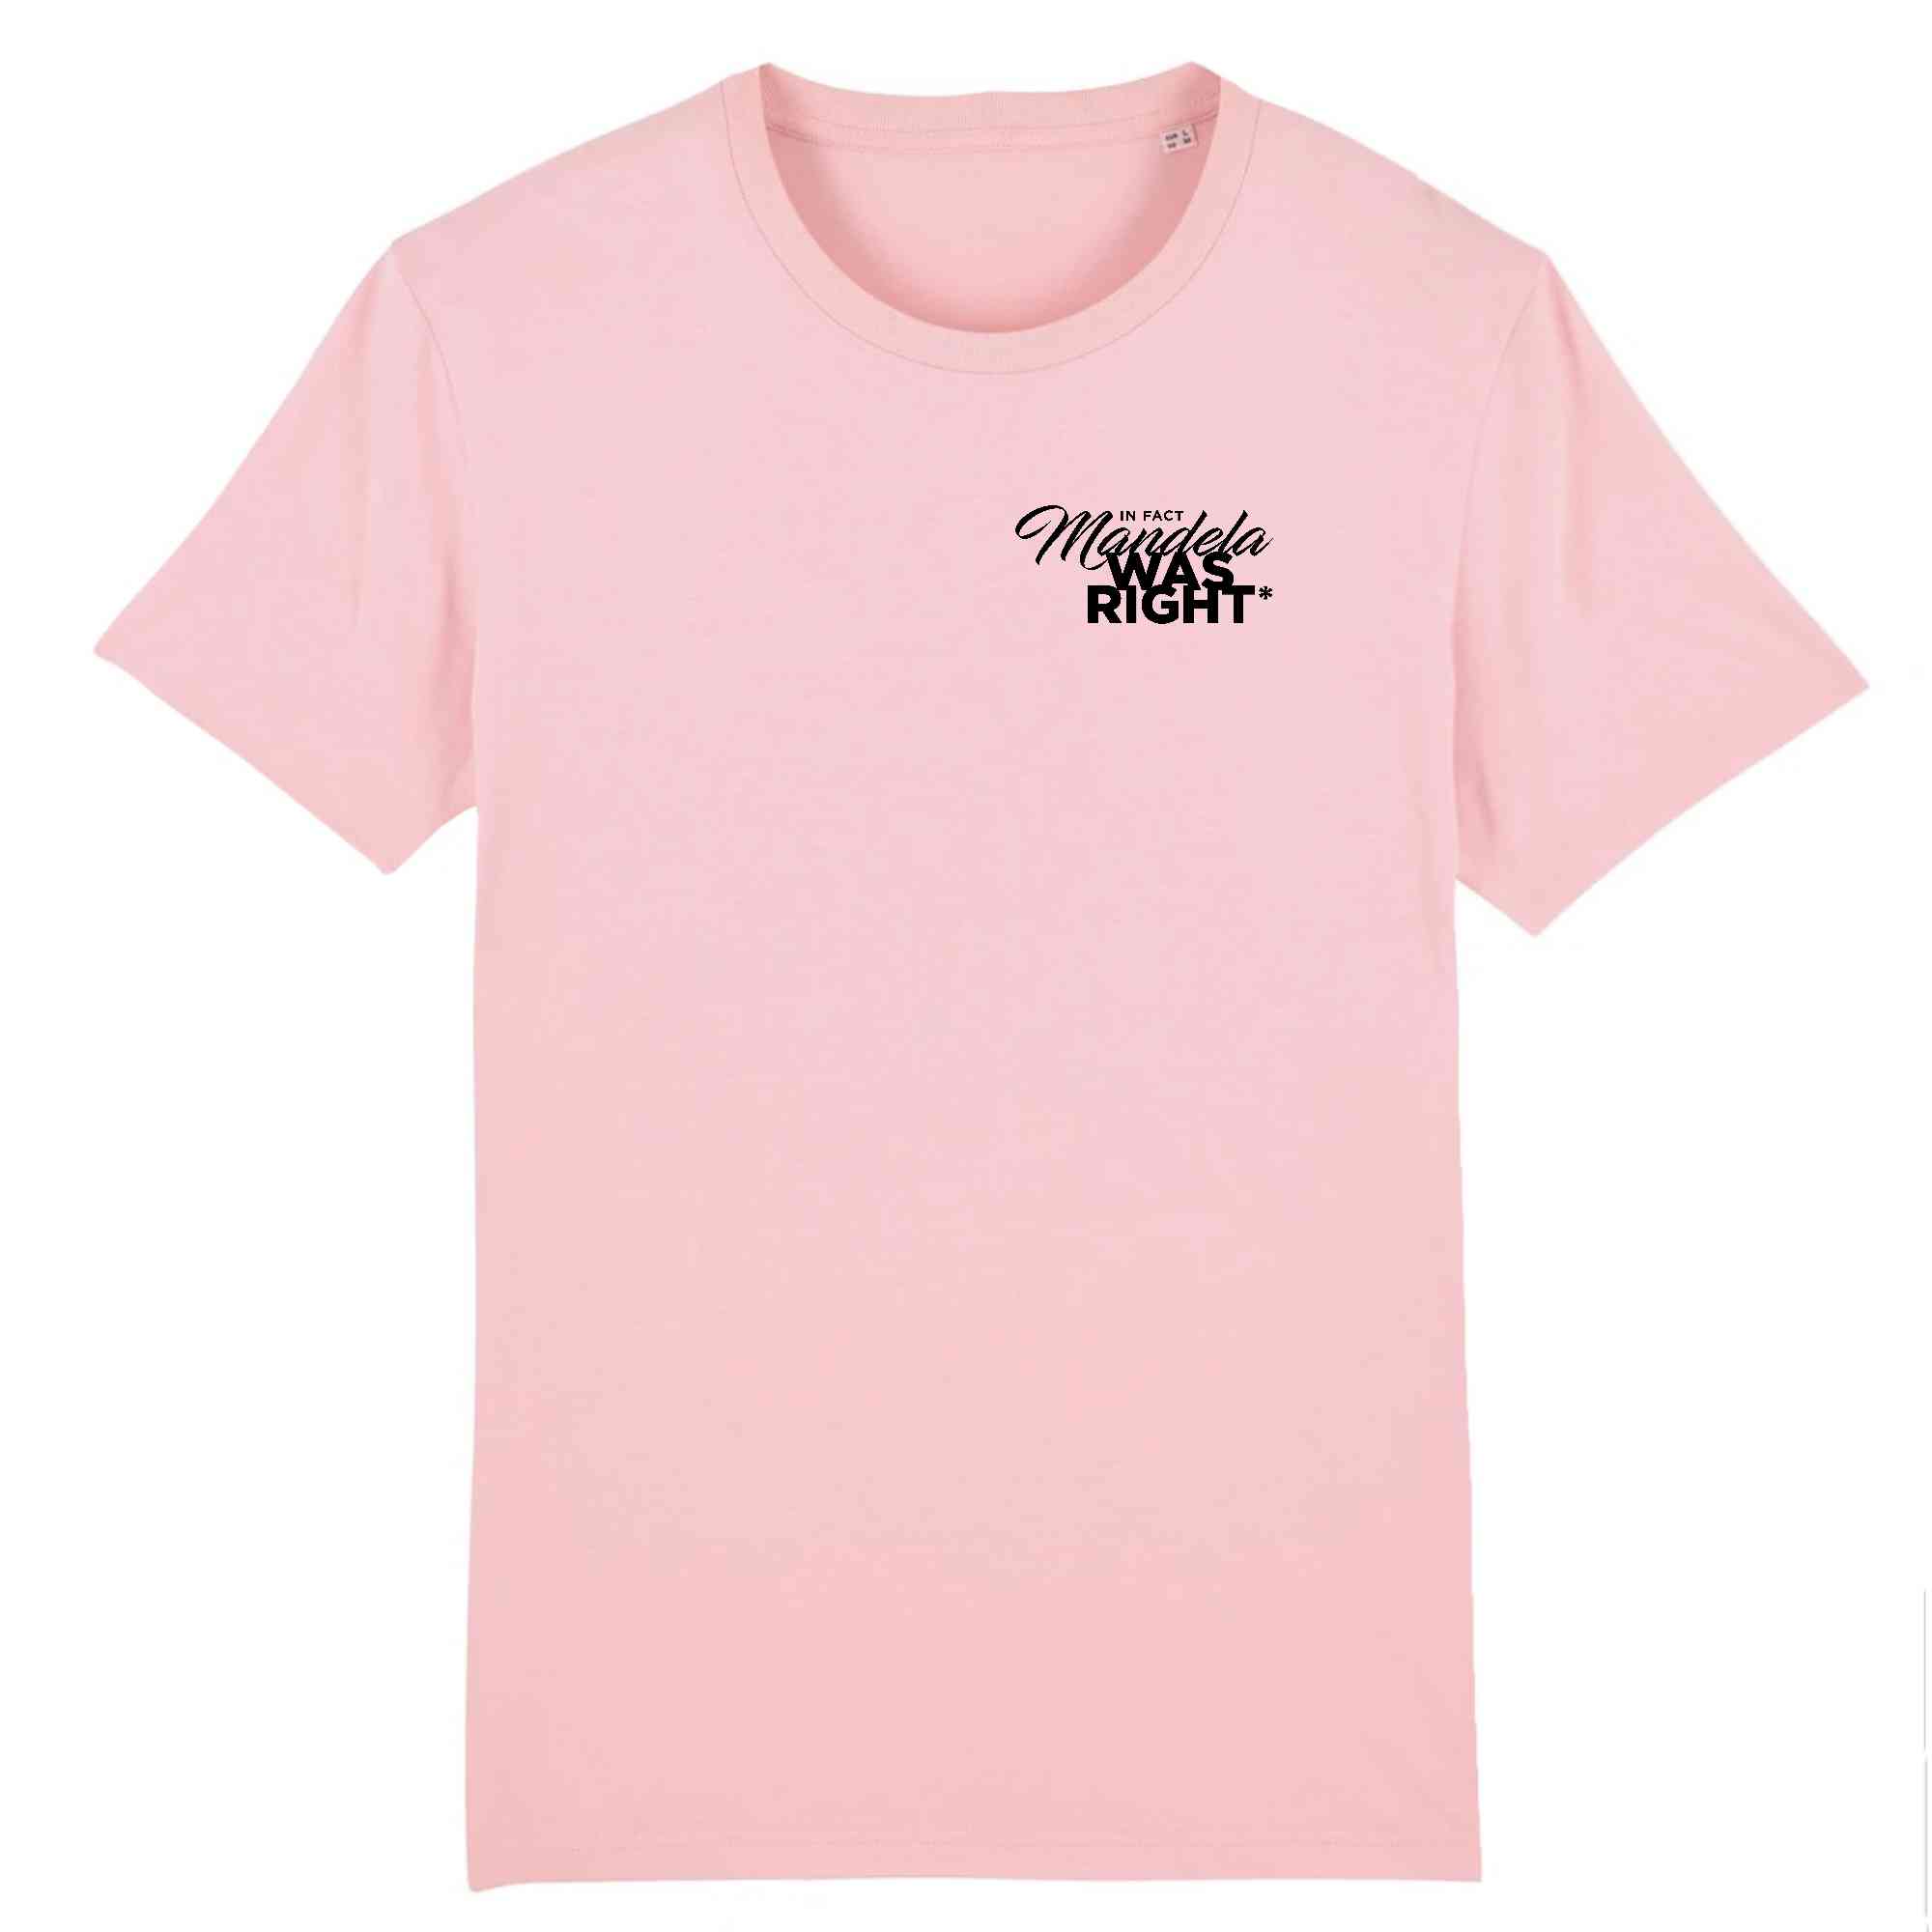 T-shirt rose et noir en coton bio Mandella WAS RIGHT - Collection Tshirt inspirant